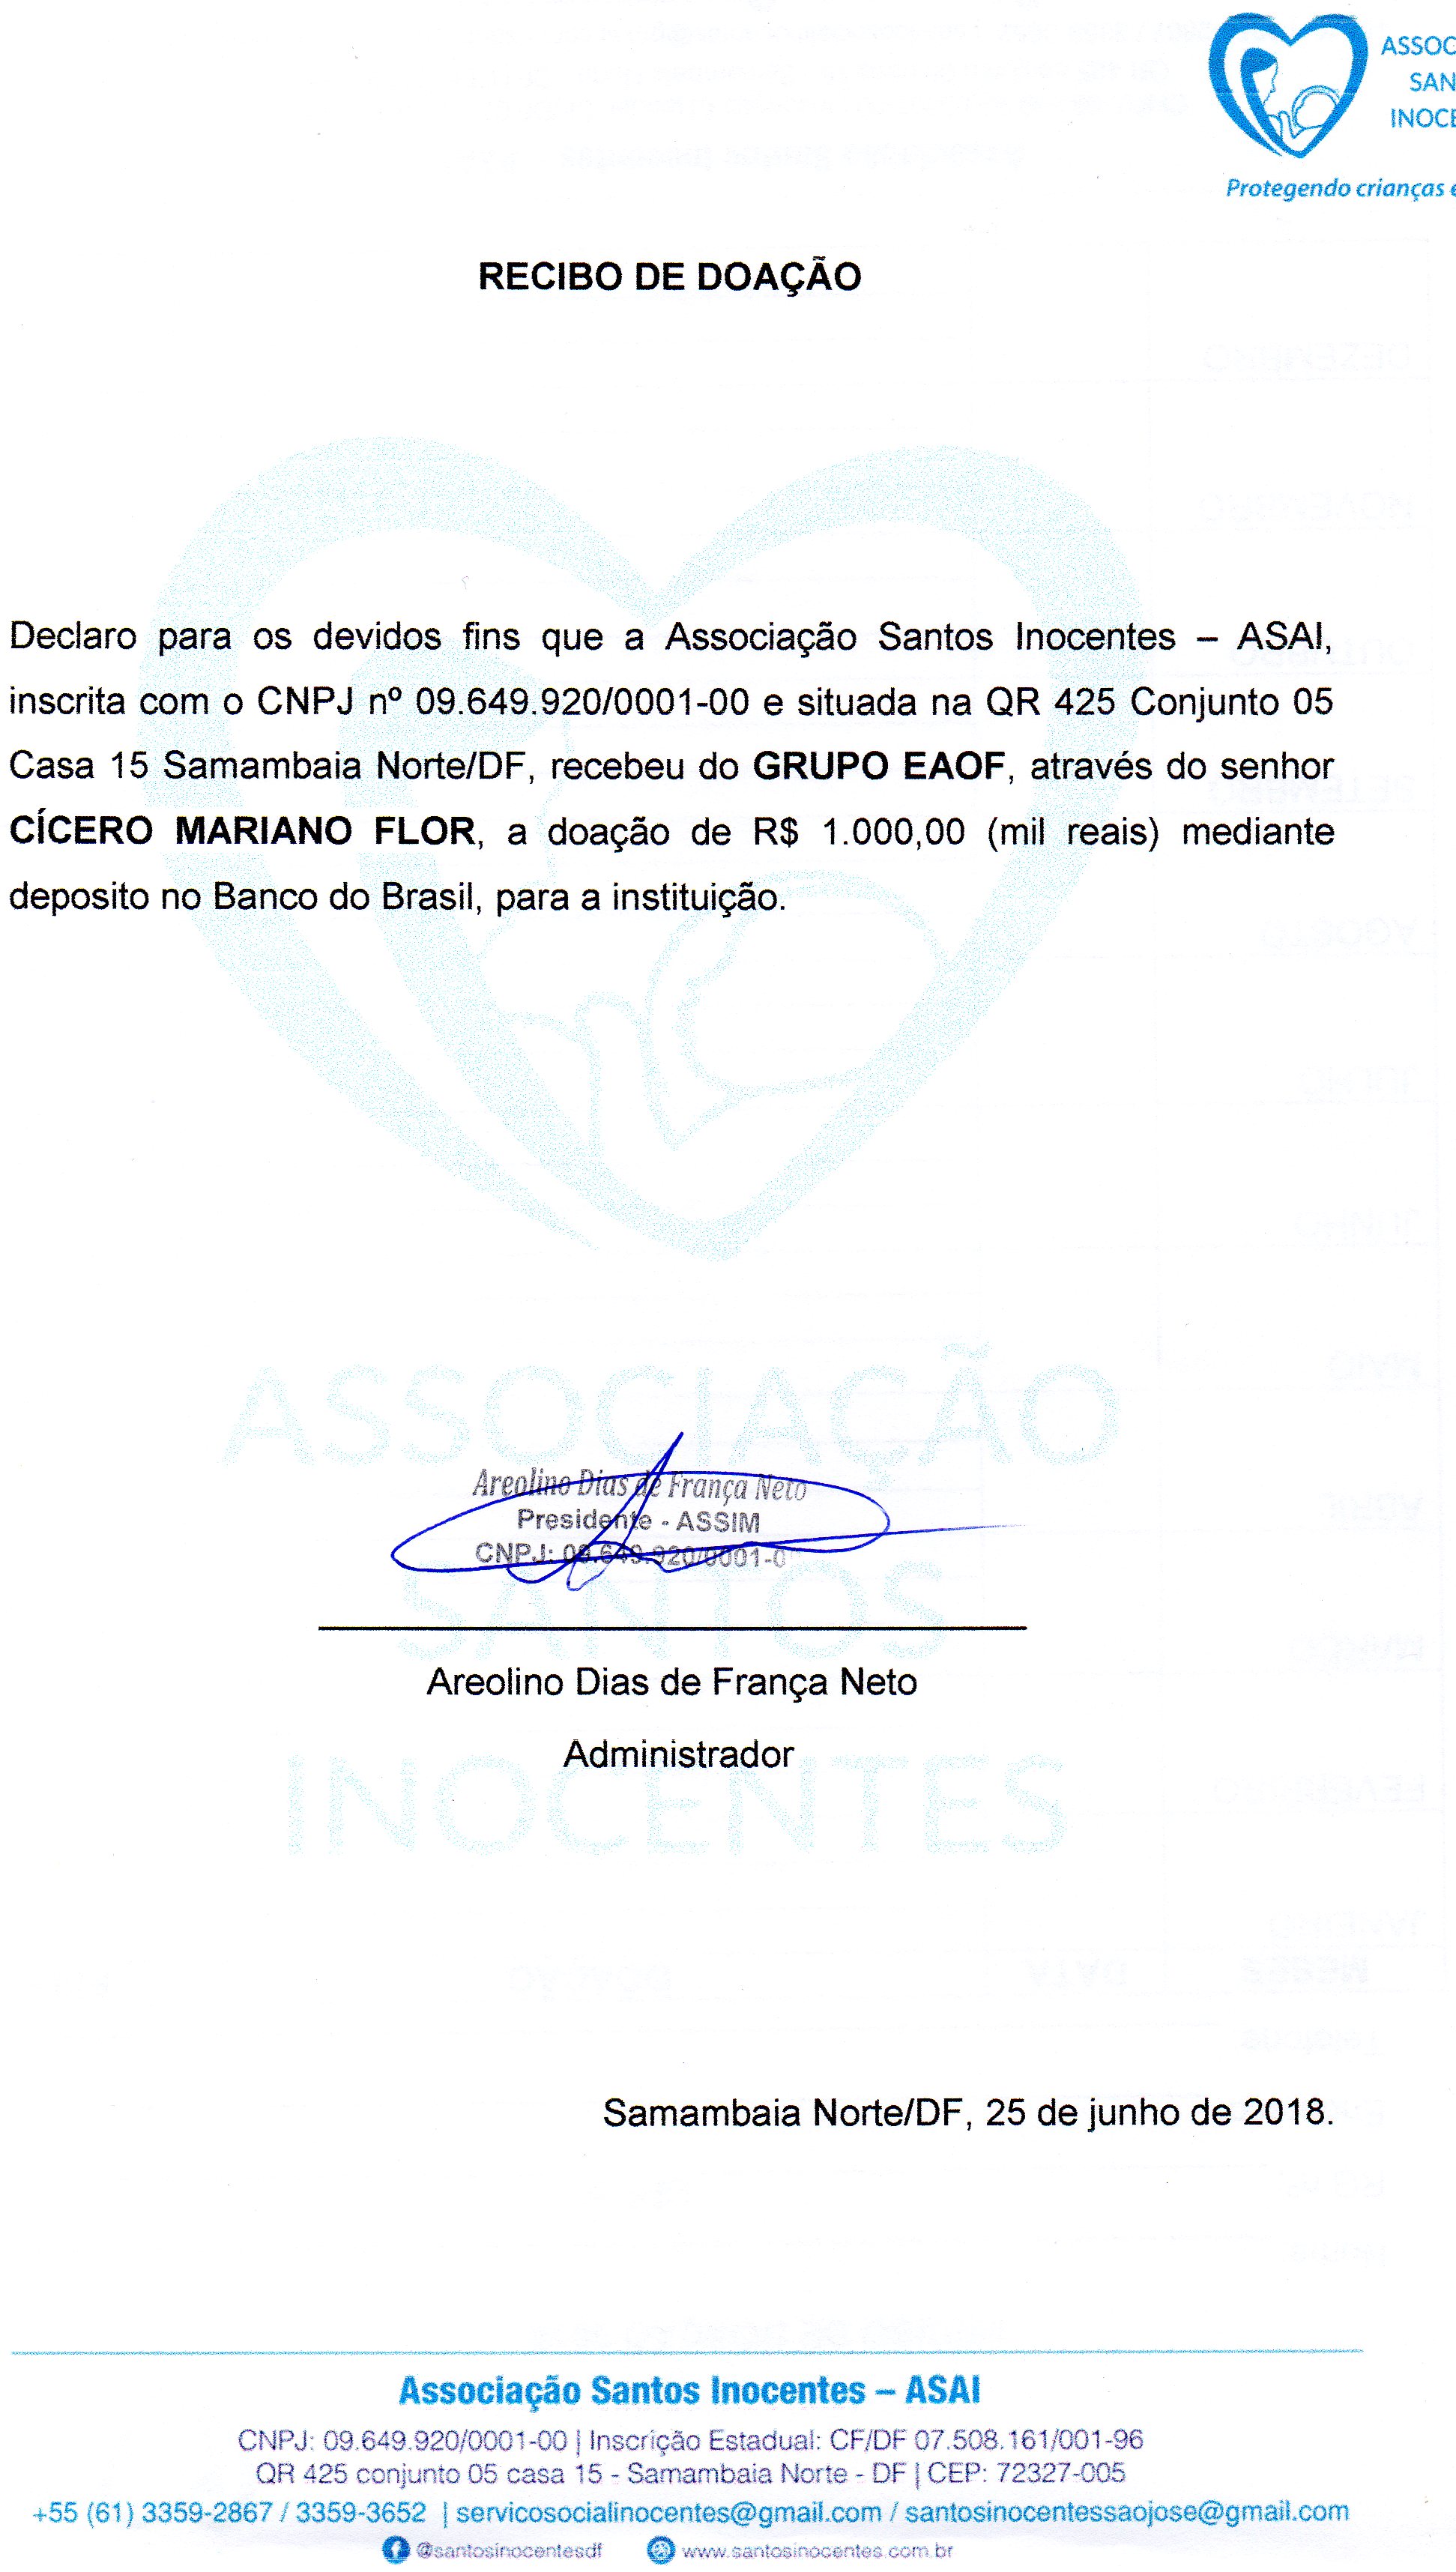 Attachment RECIBO_DOACAO_SANTOS_INOCENTES_GRUPO_AEOF_JUN2018.jpg